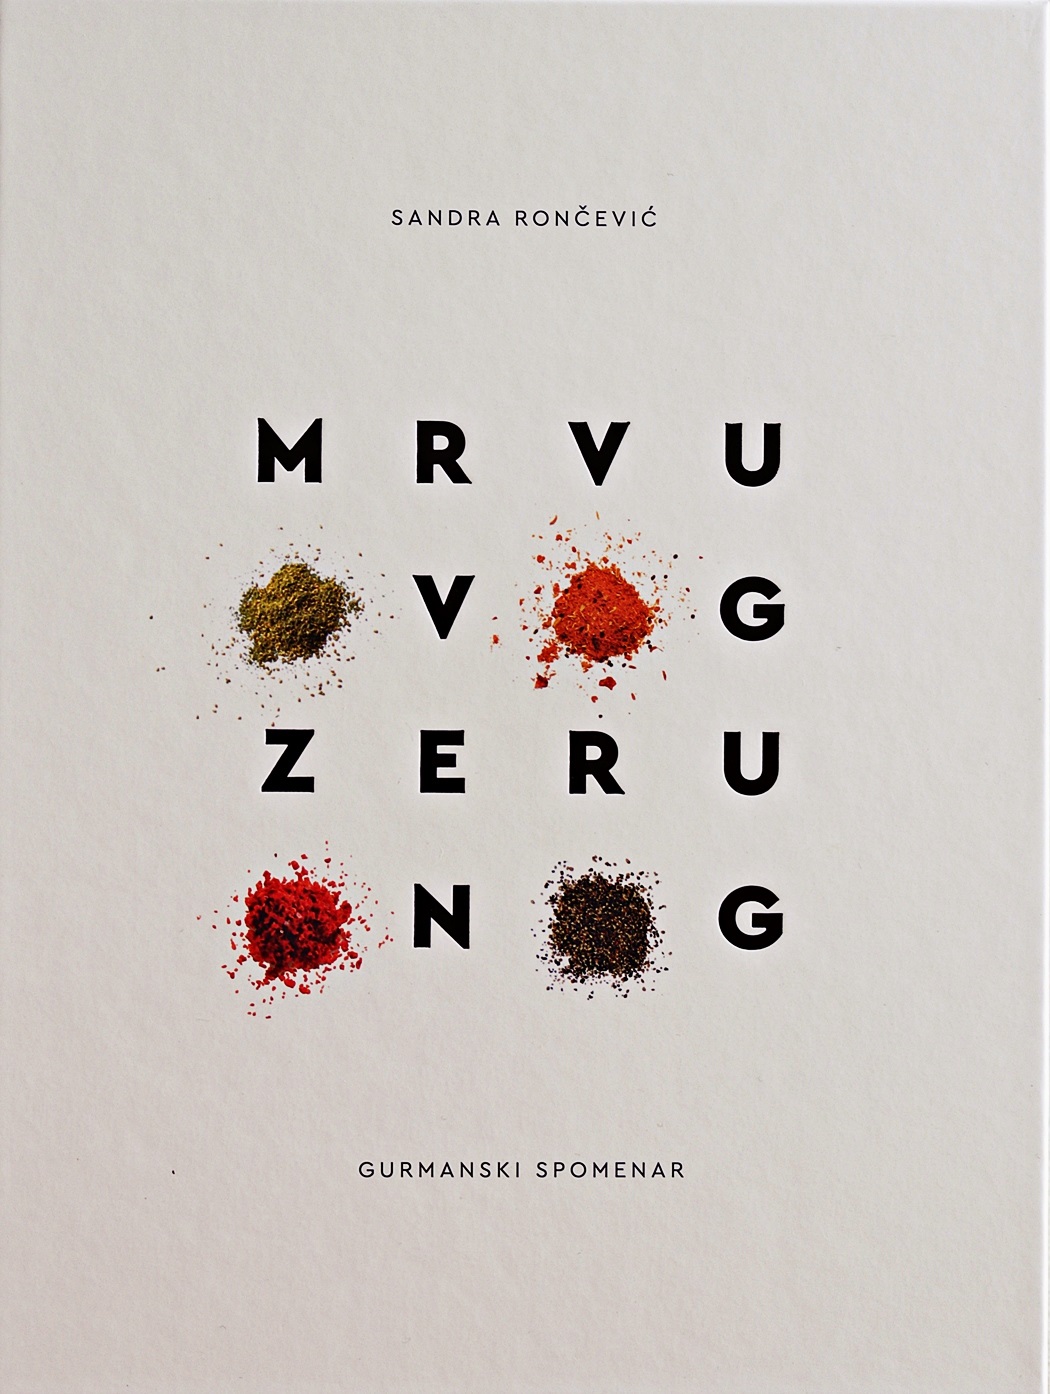 Knjiga Mrvu ovog, zeru onog autora Sandra Rončević izdana 2021 kao tvrdi uvez dostupna u Knjižari Znanje.